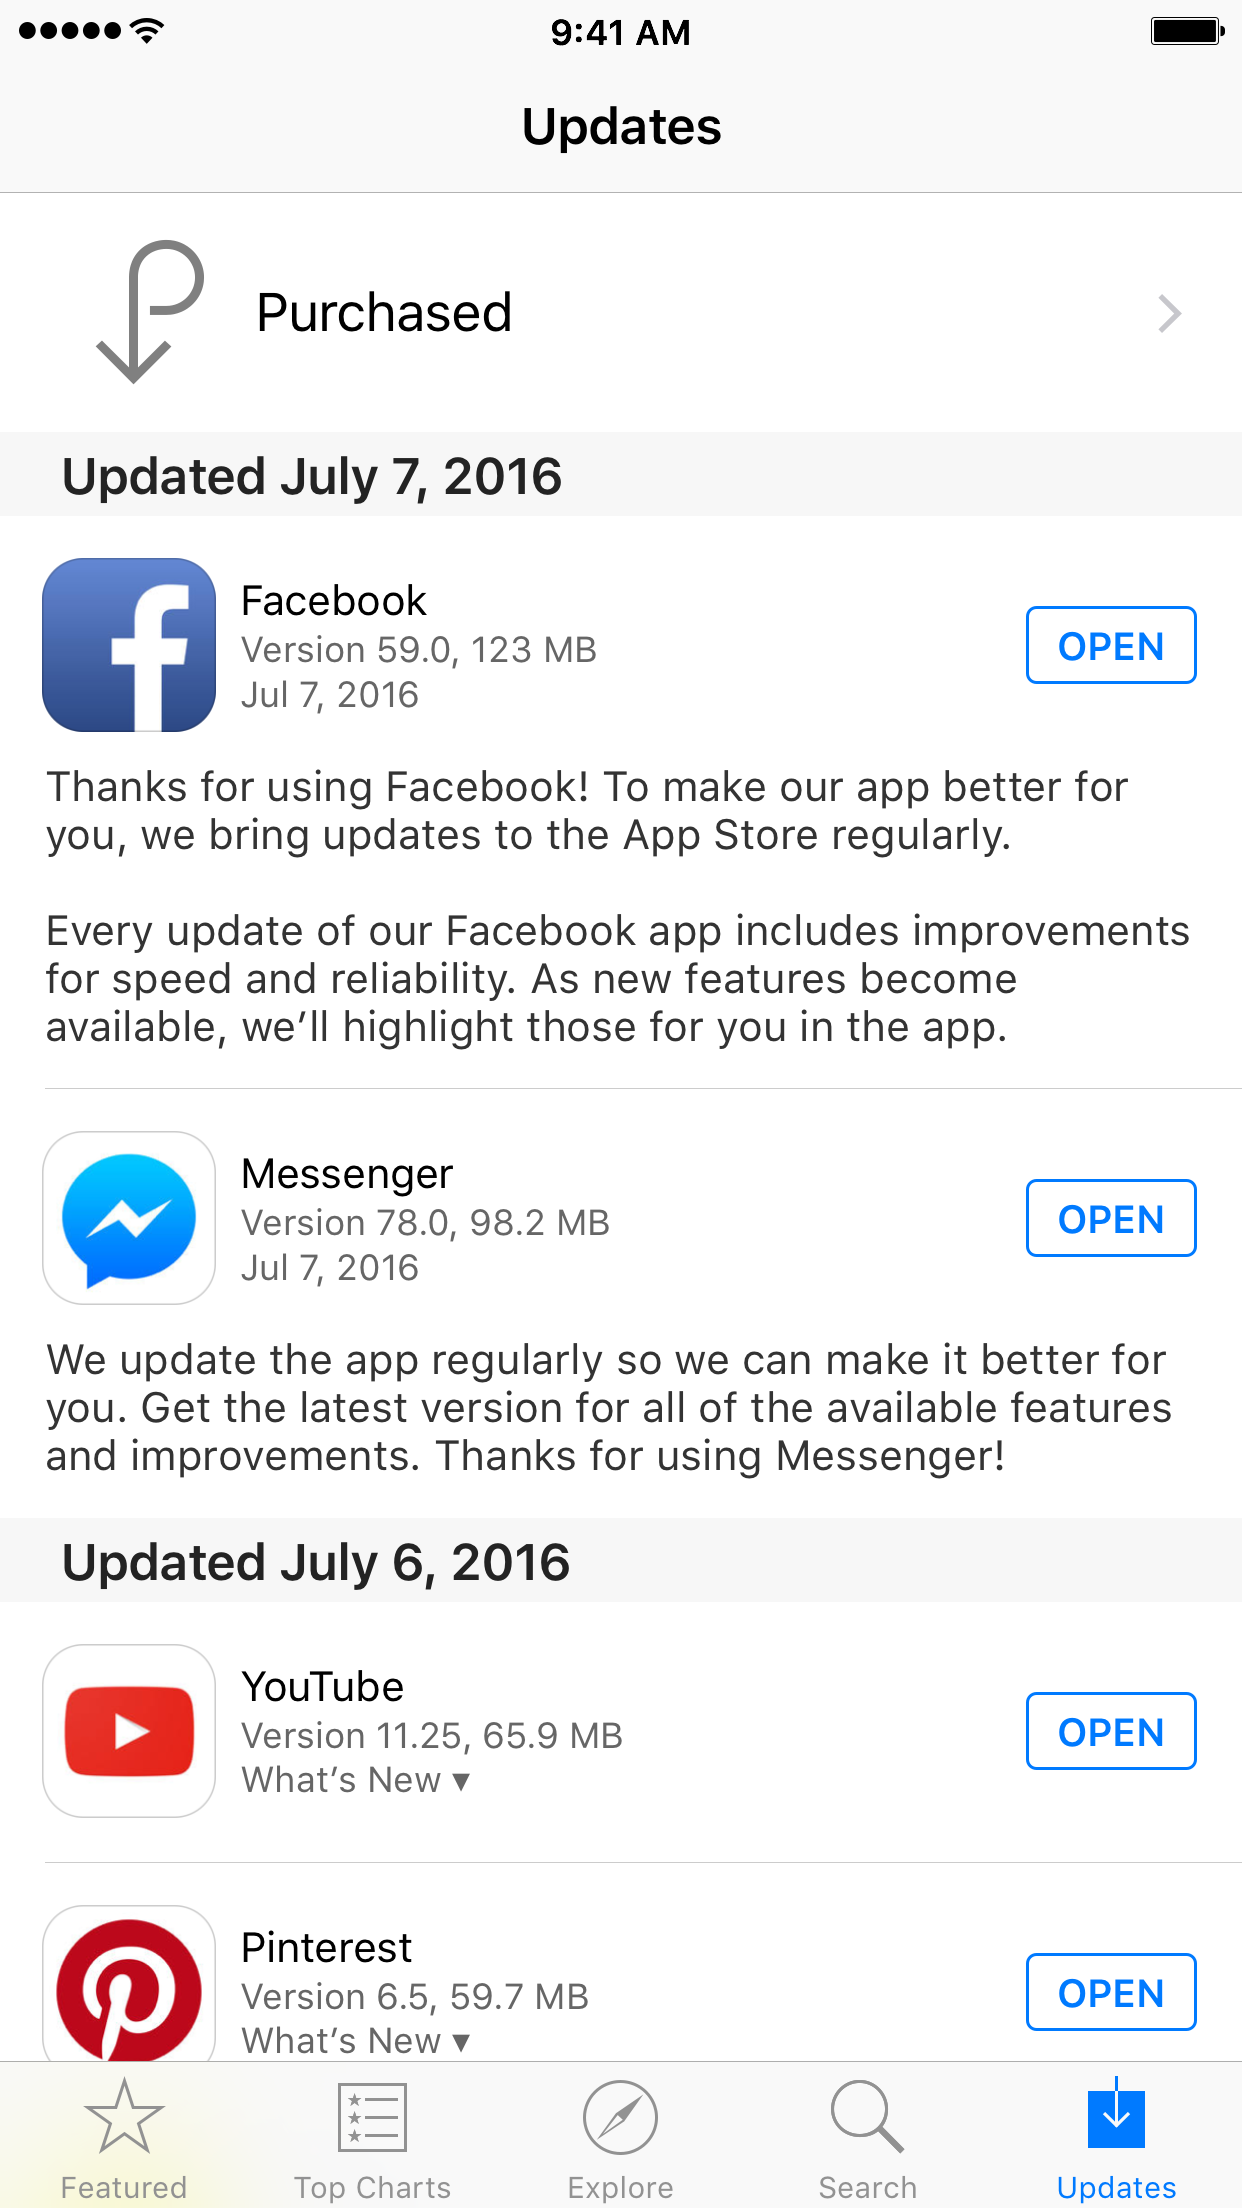 Useless App Store app change logs